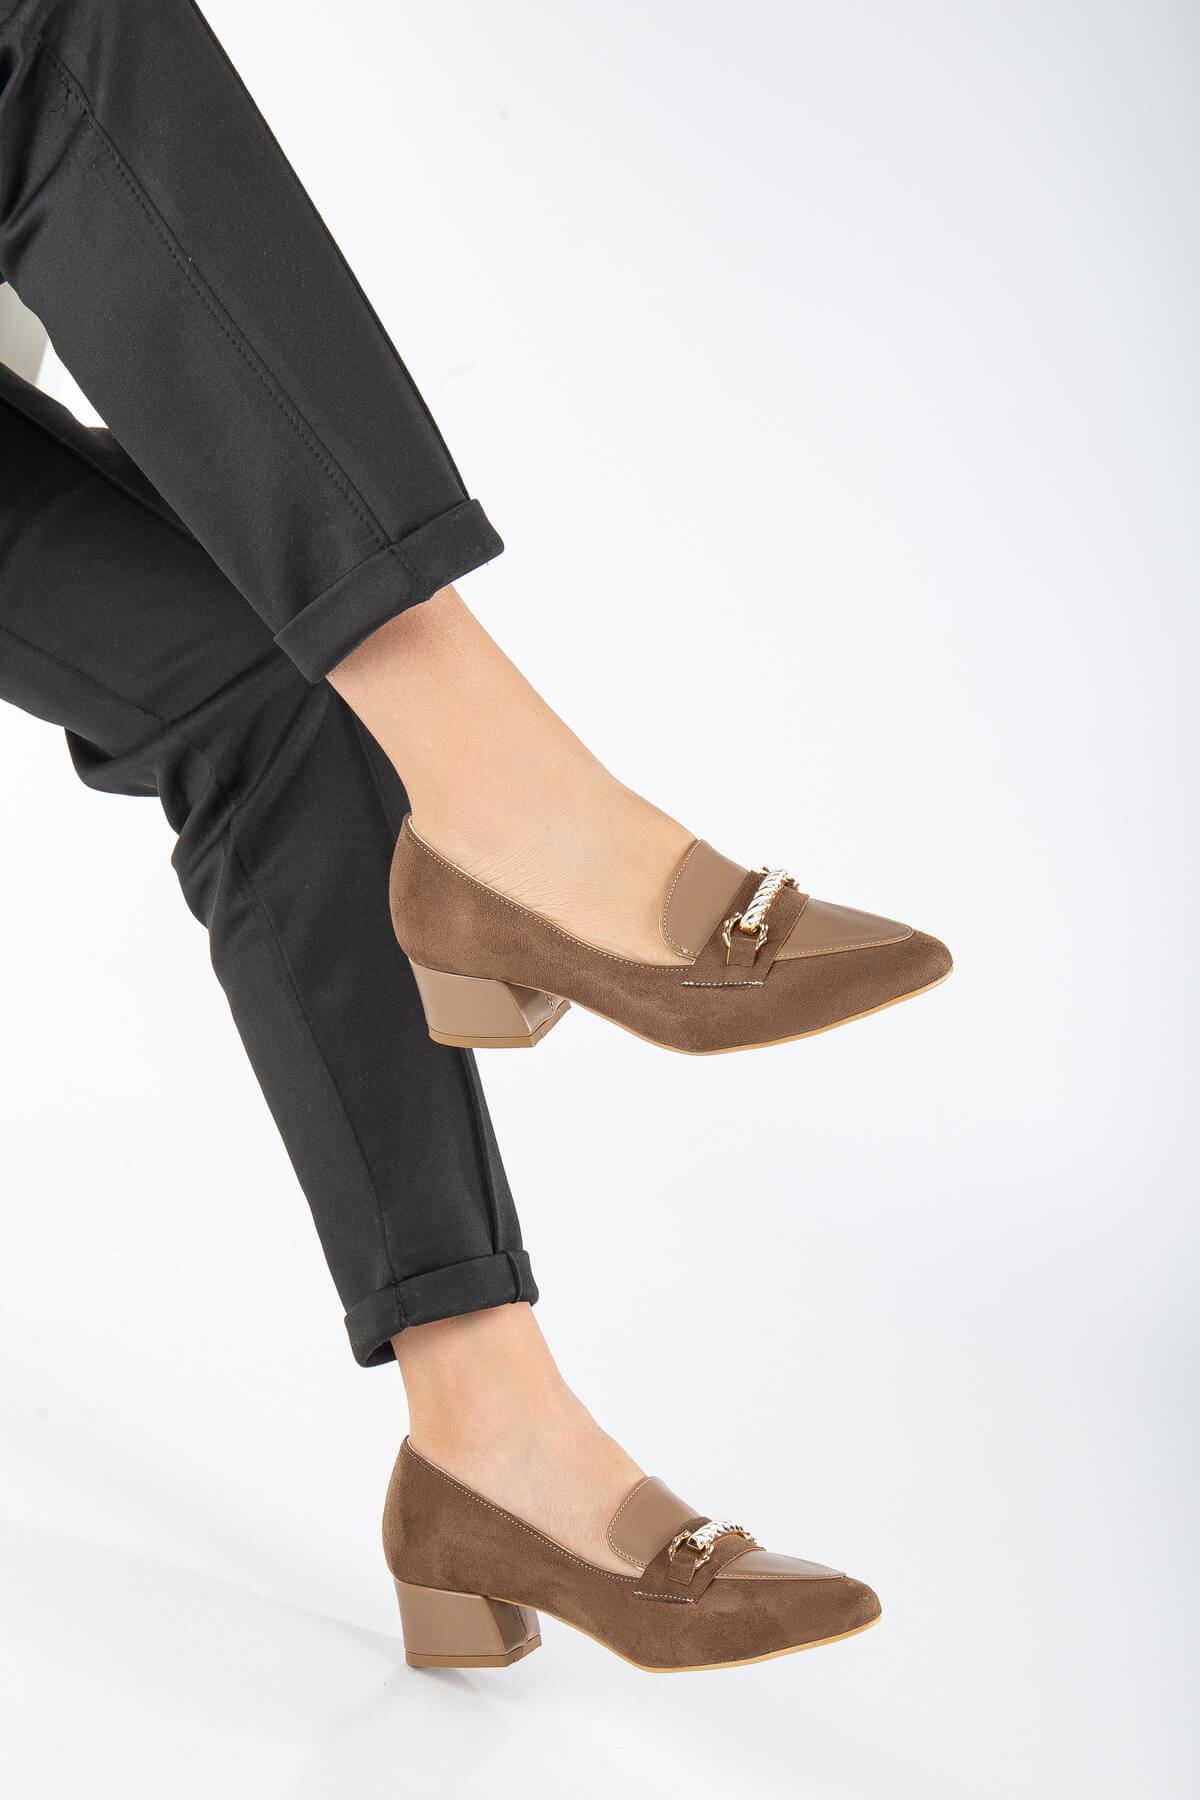 AUGUSTA Vizon Süet - Cilt Toka Detaylı Kadın Alçak Topuklu Ayakkabı